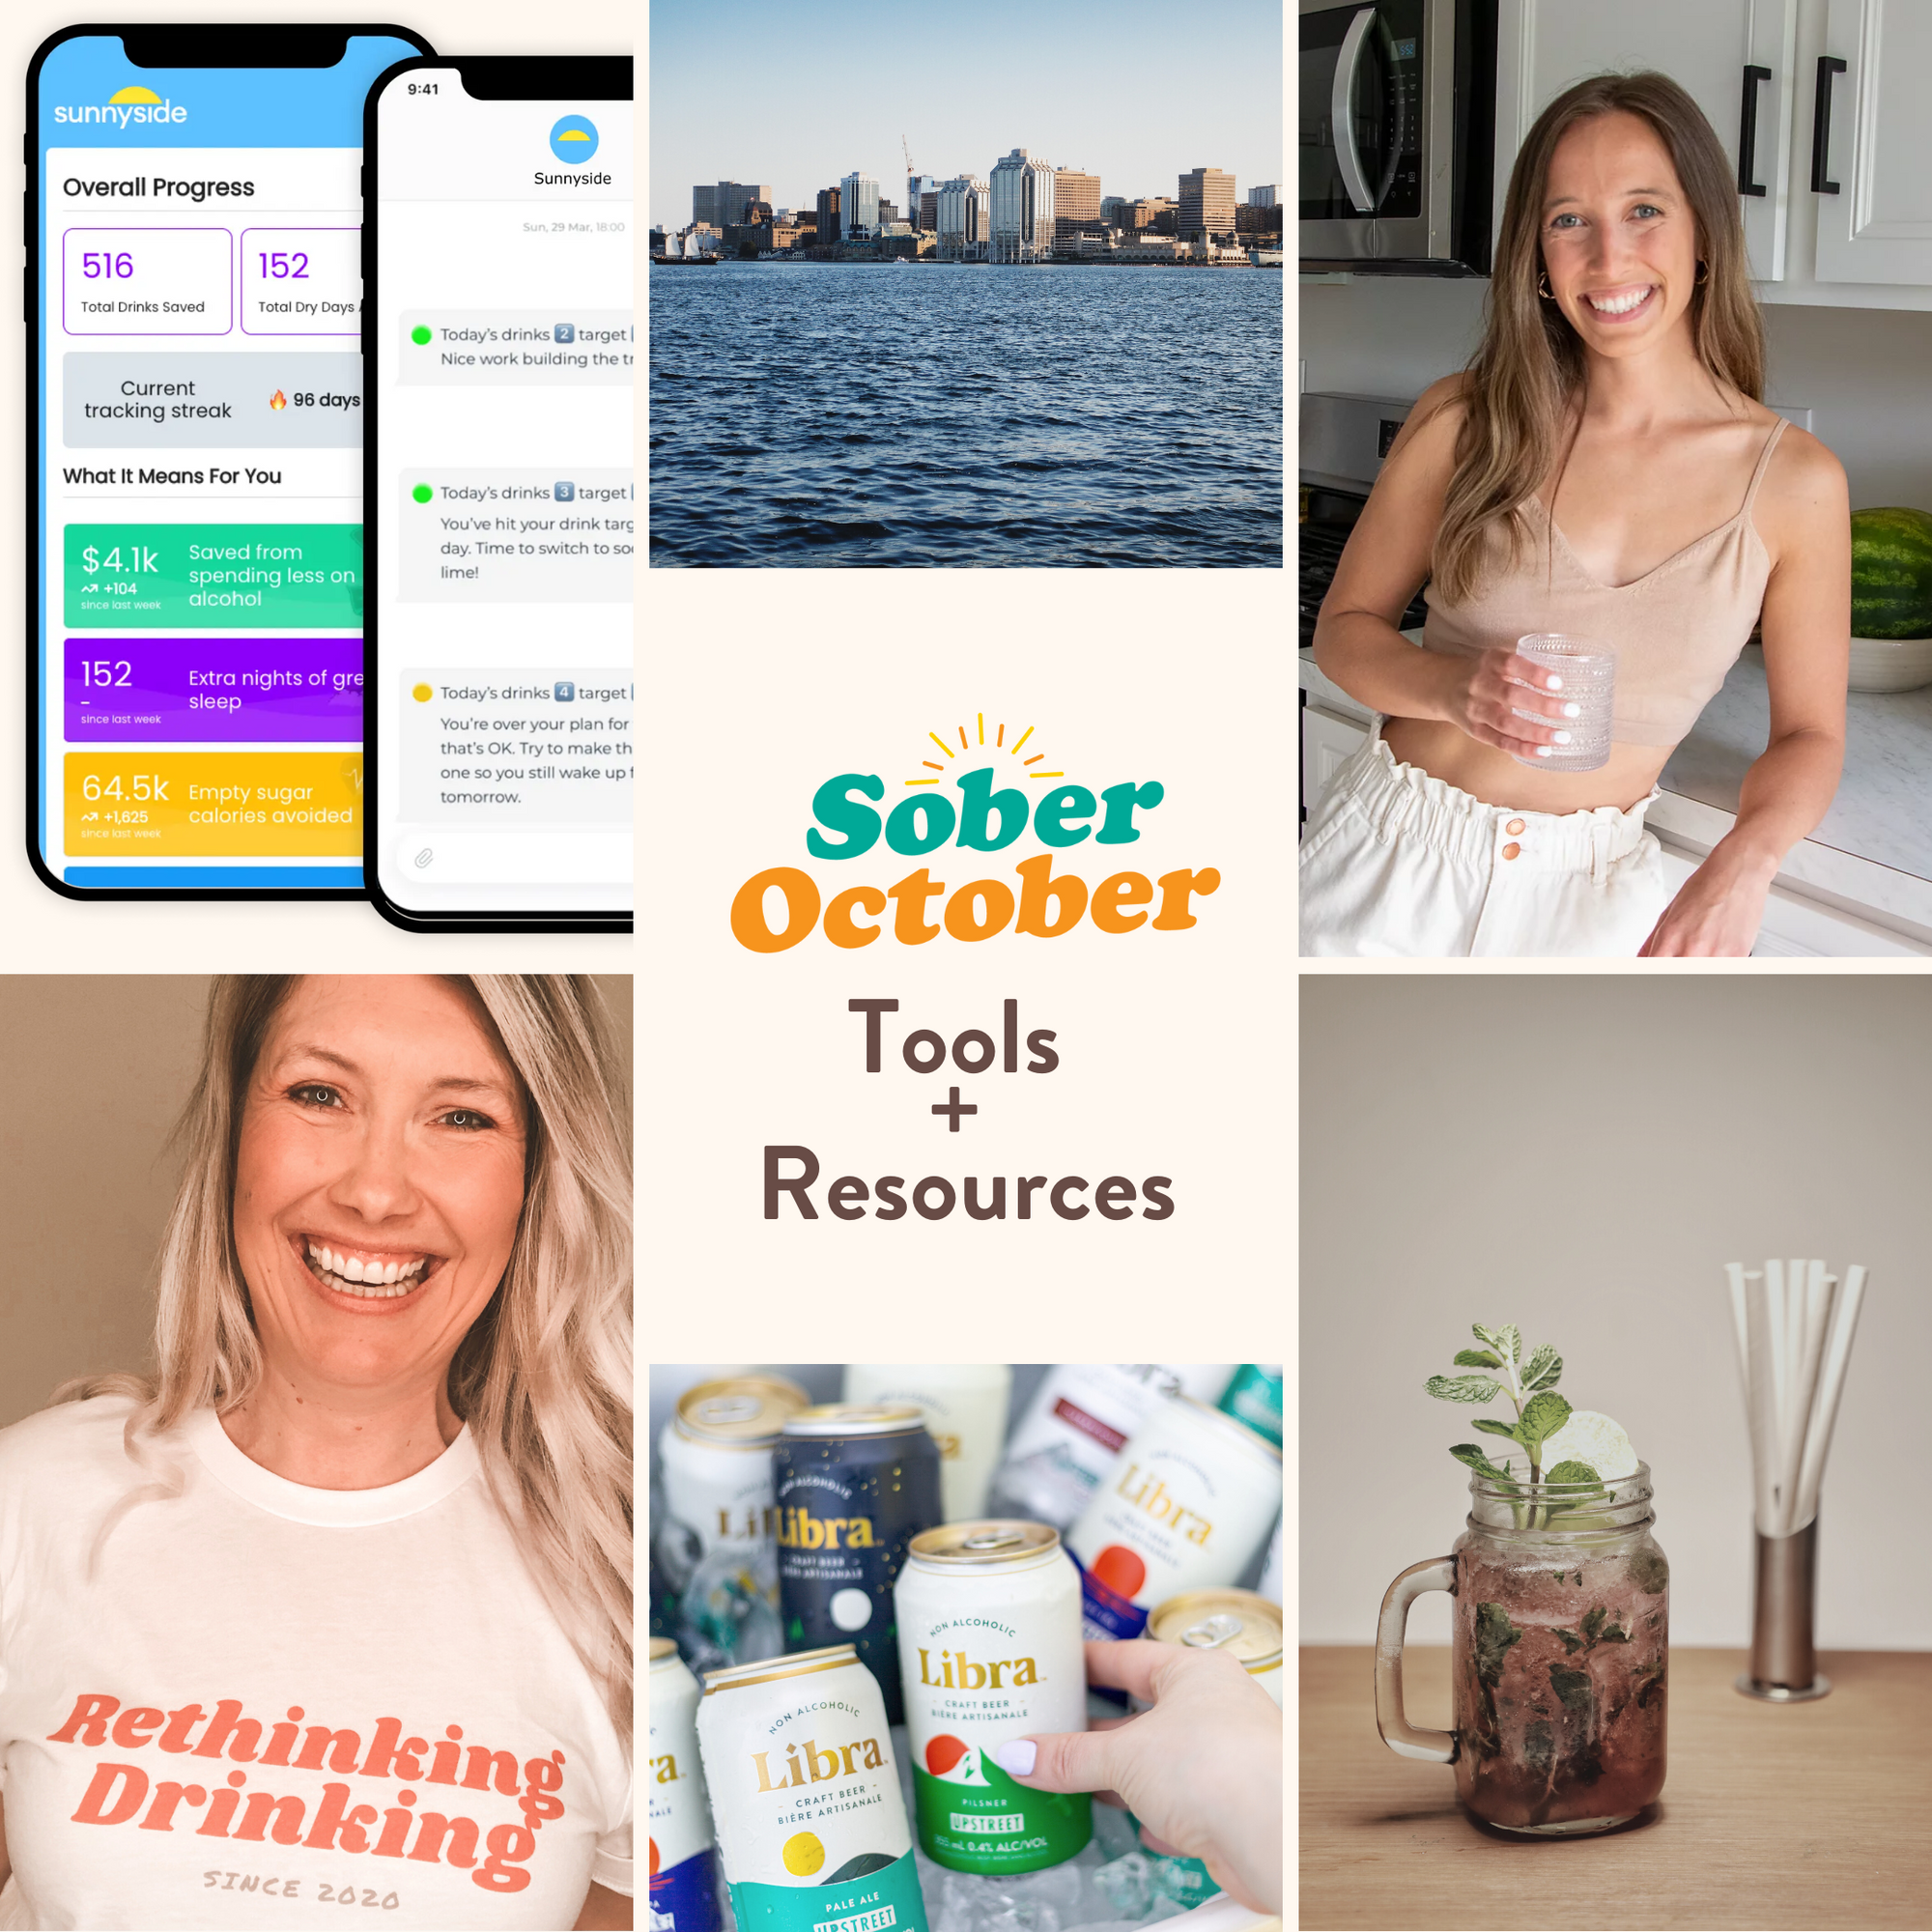 Libra's Sober October Tools & Resources